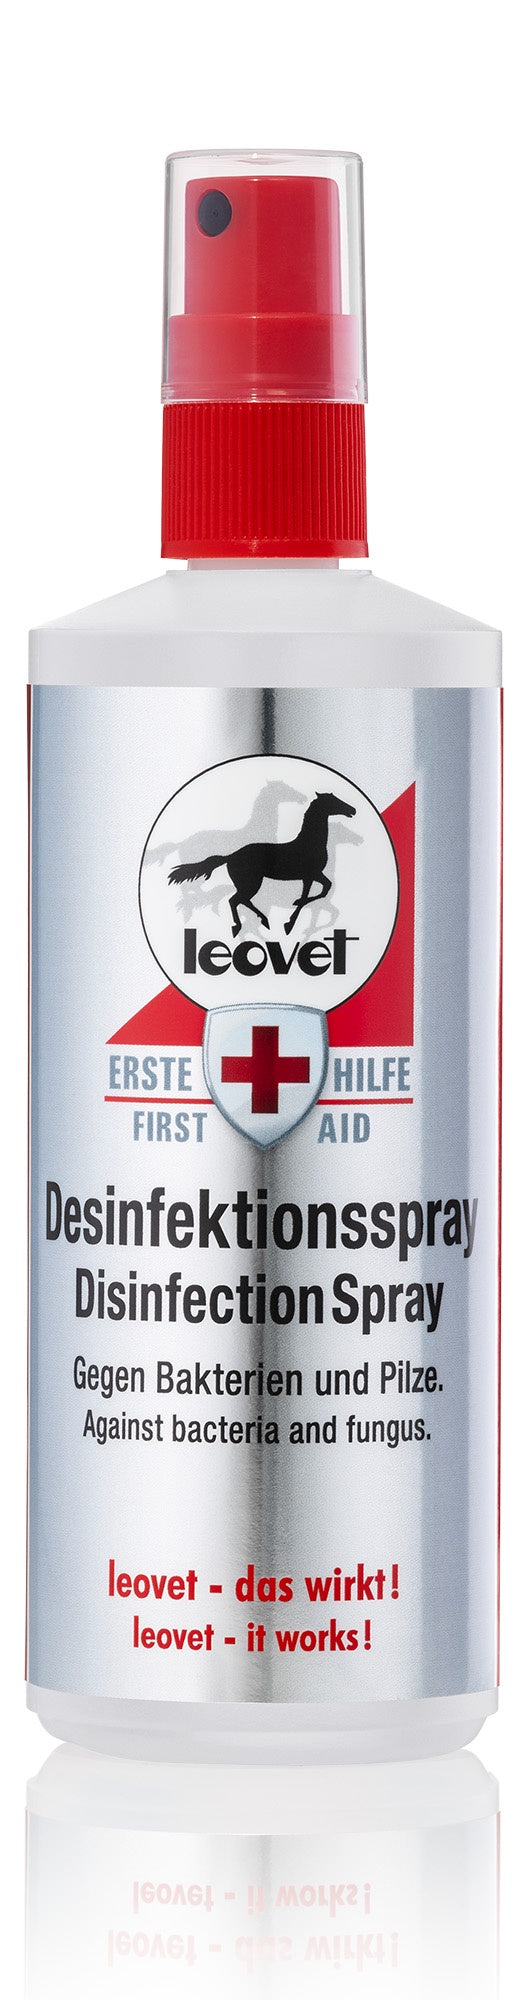 Leovet Disinfection Spray 200ml